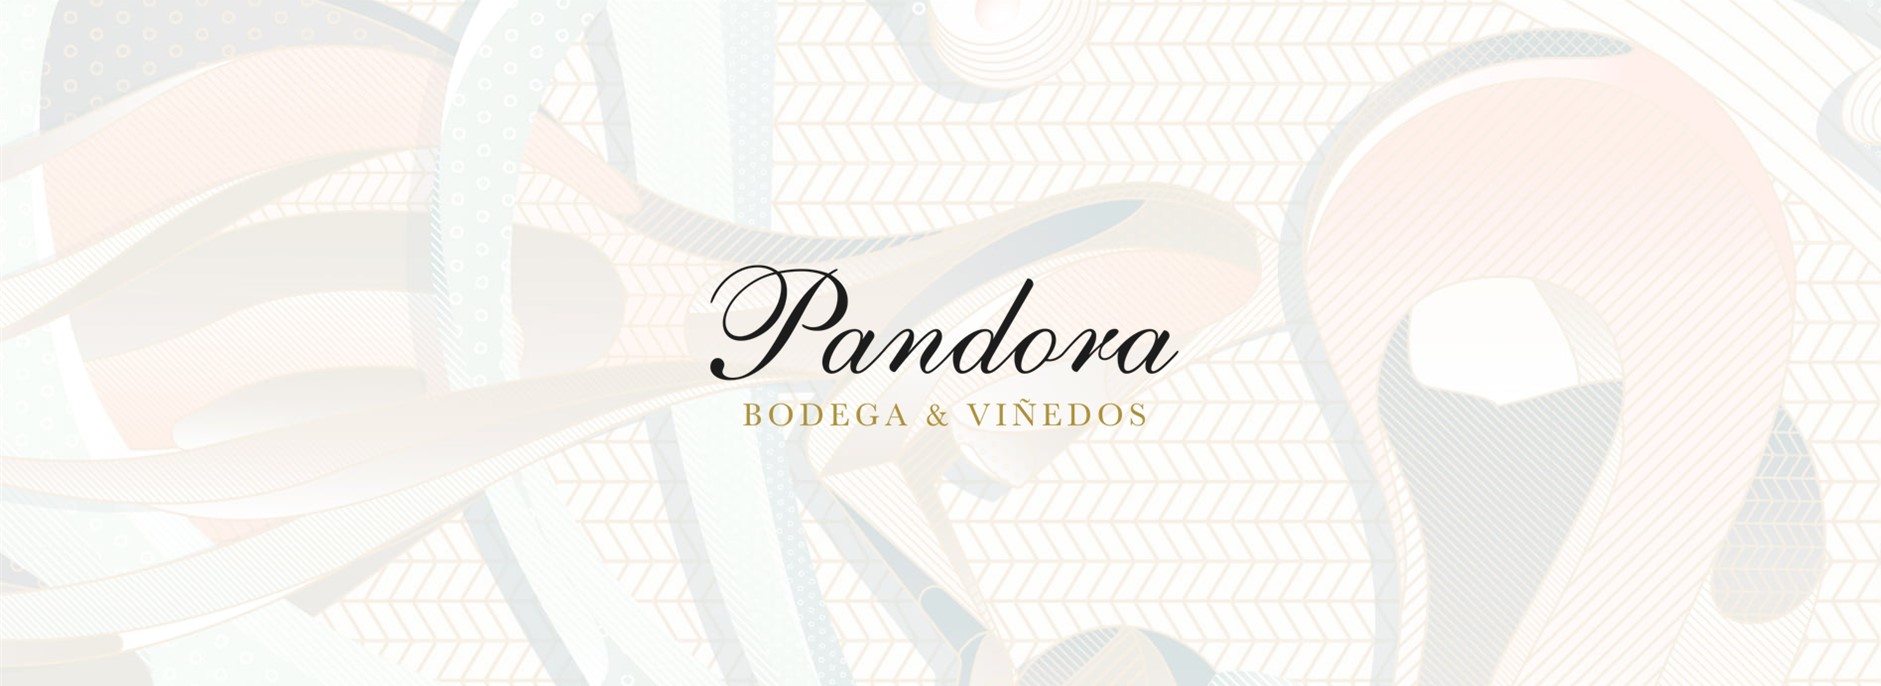 Bodegas Pandora web banner 2